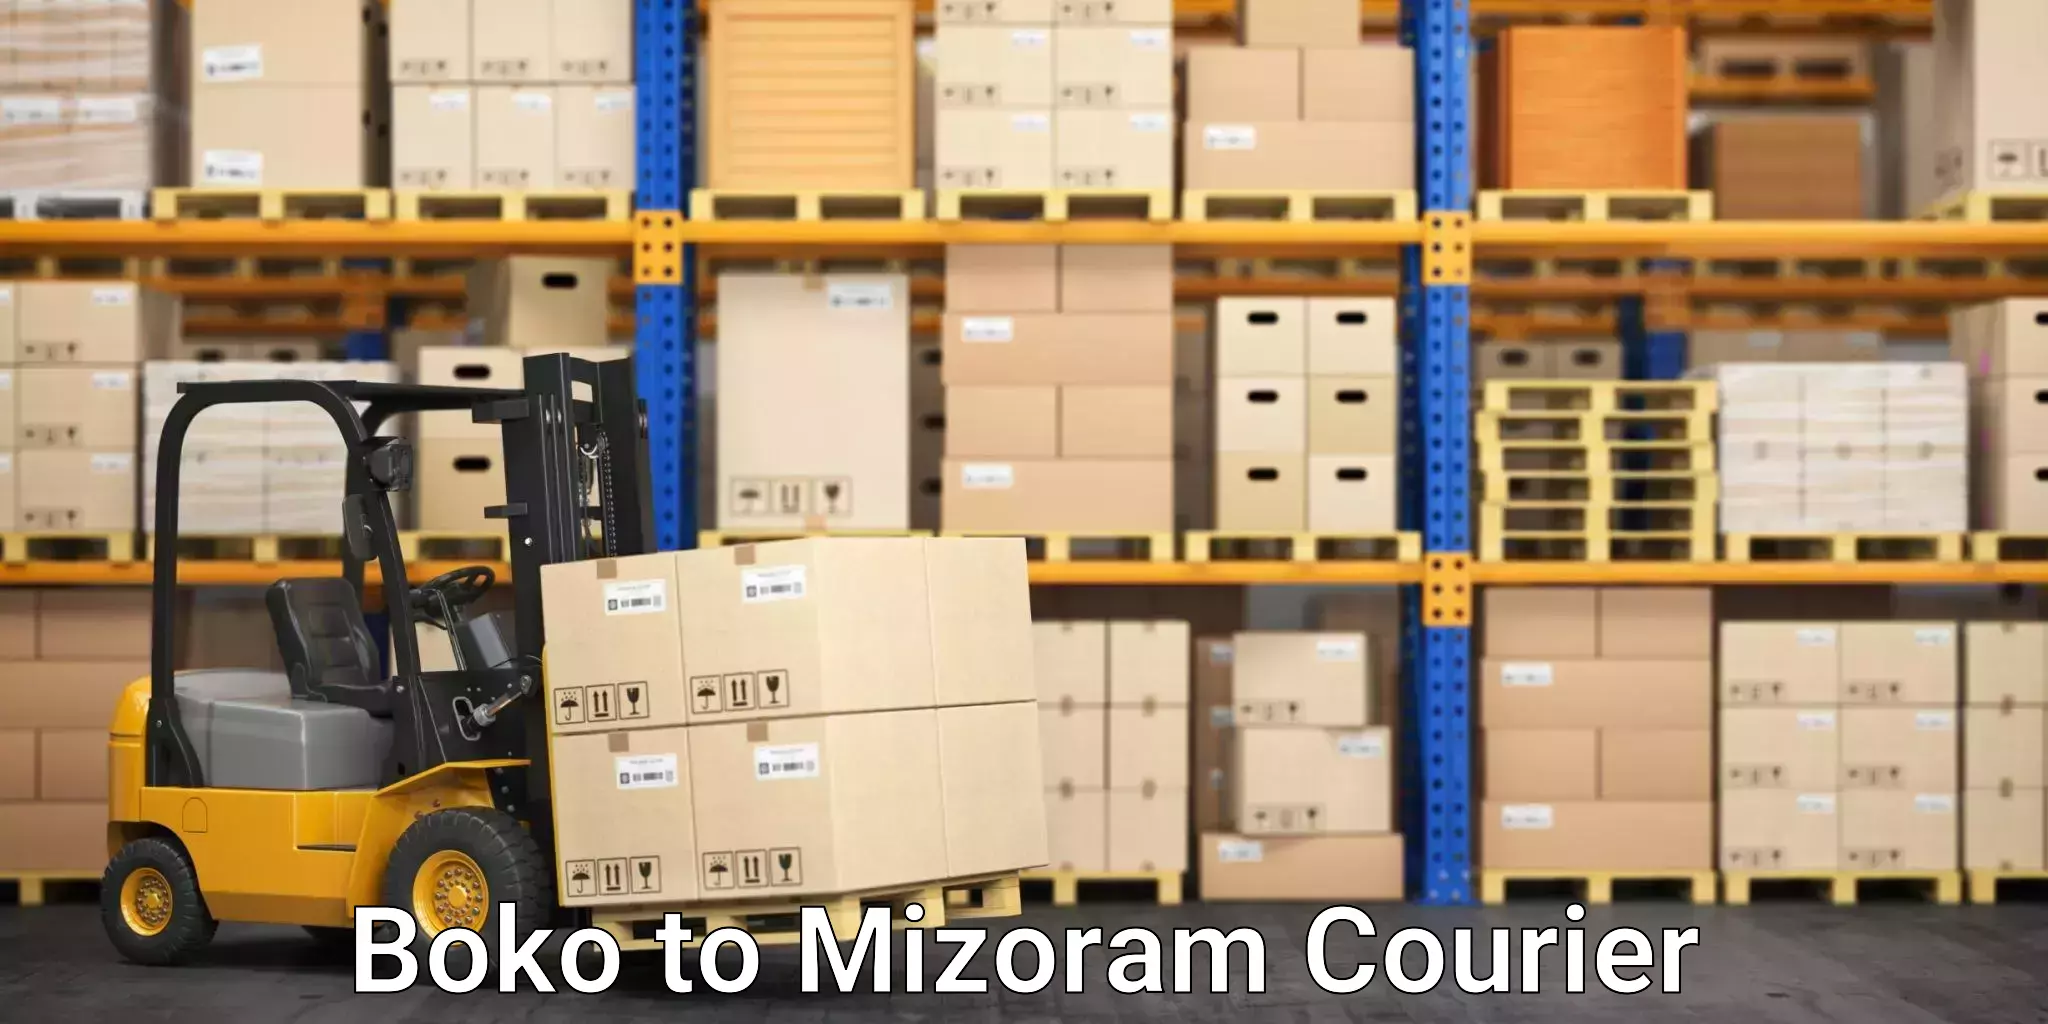 Premium courier solutions Boko to Mizoram